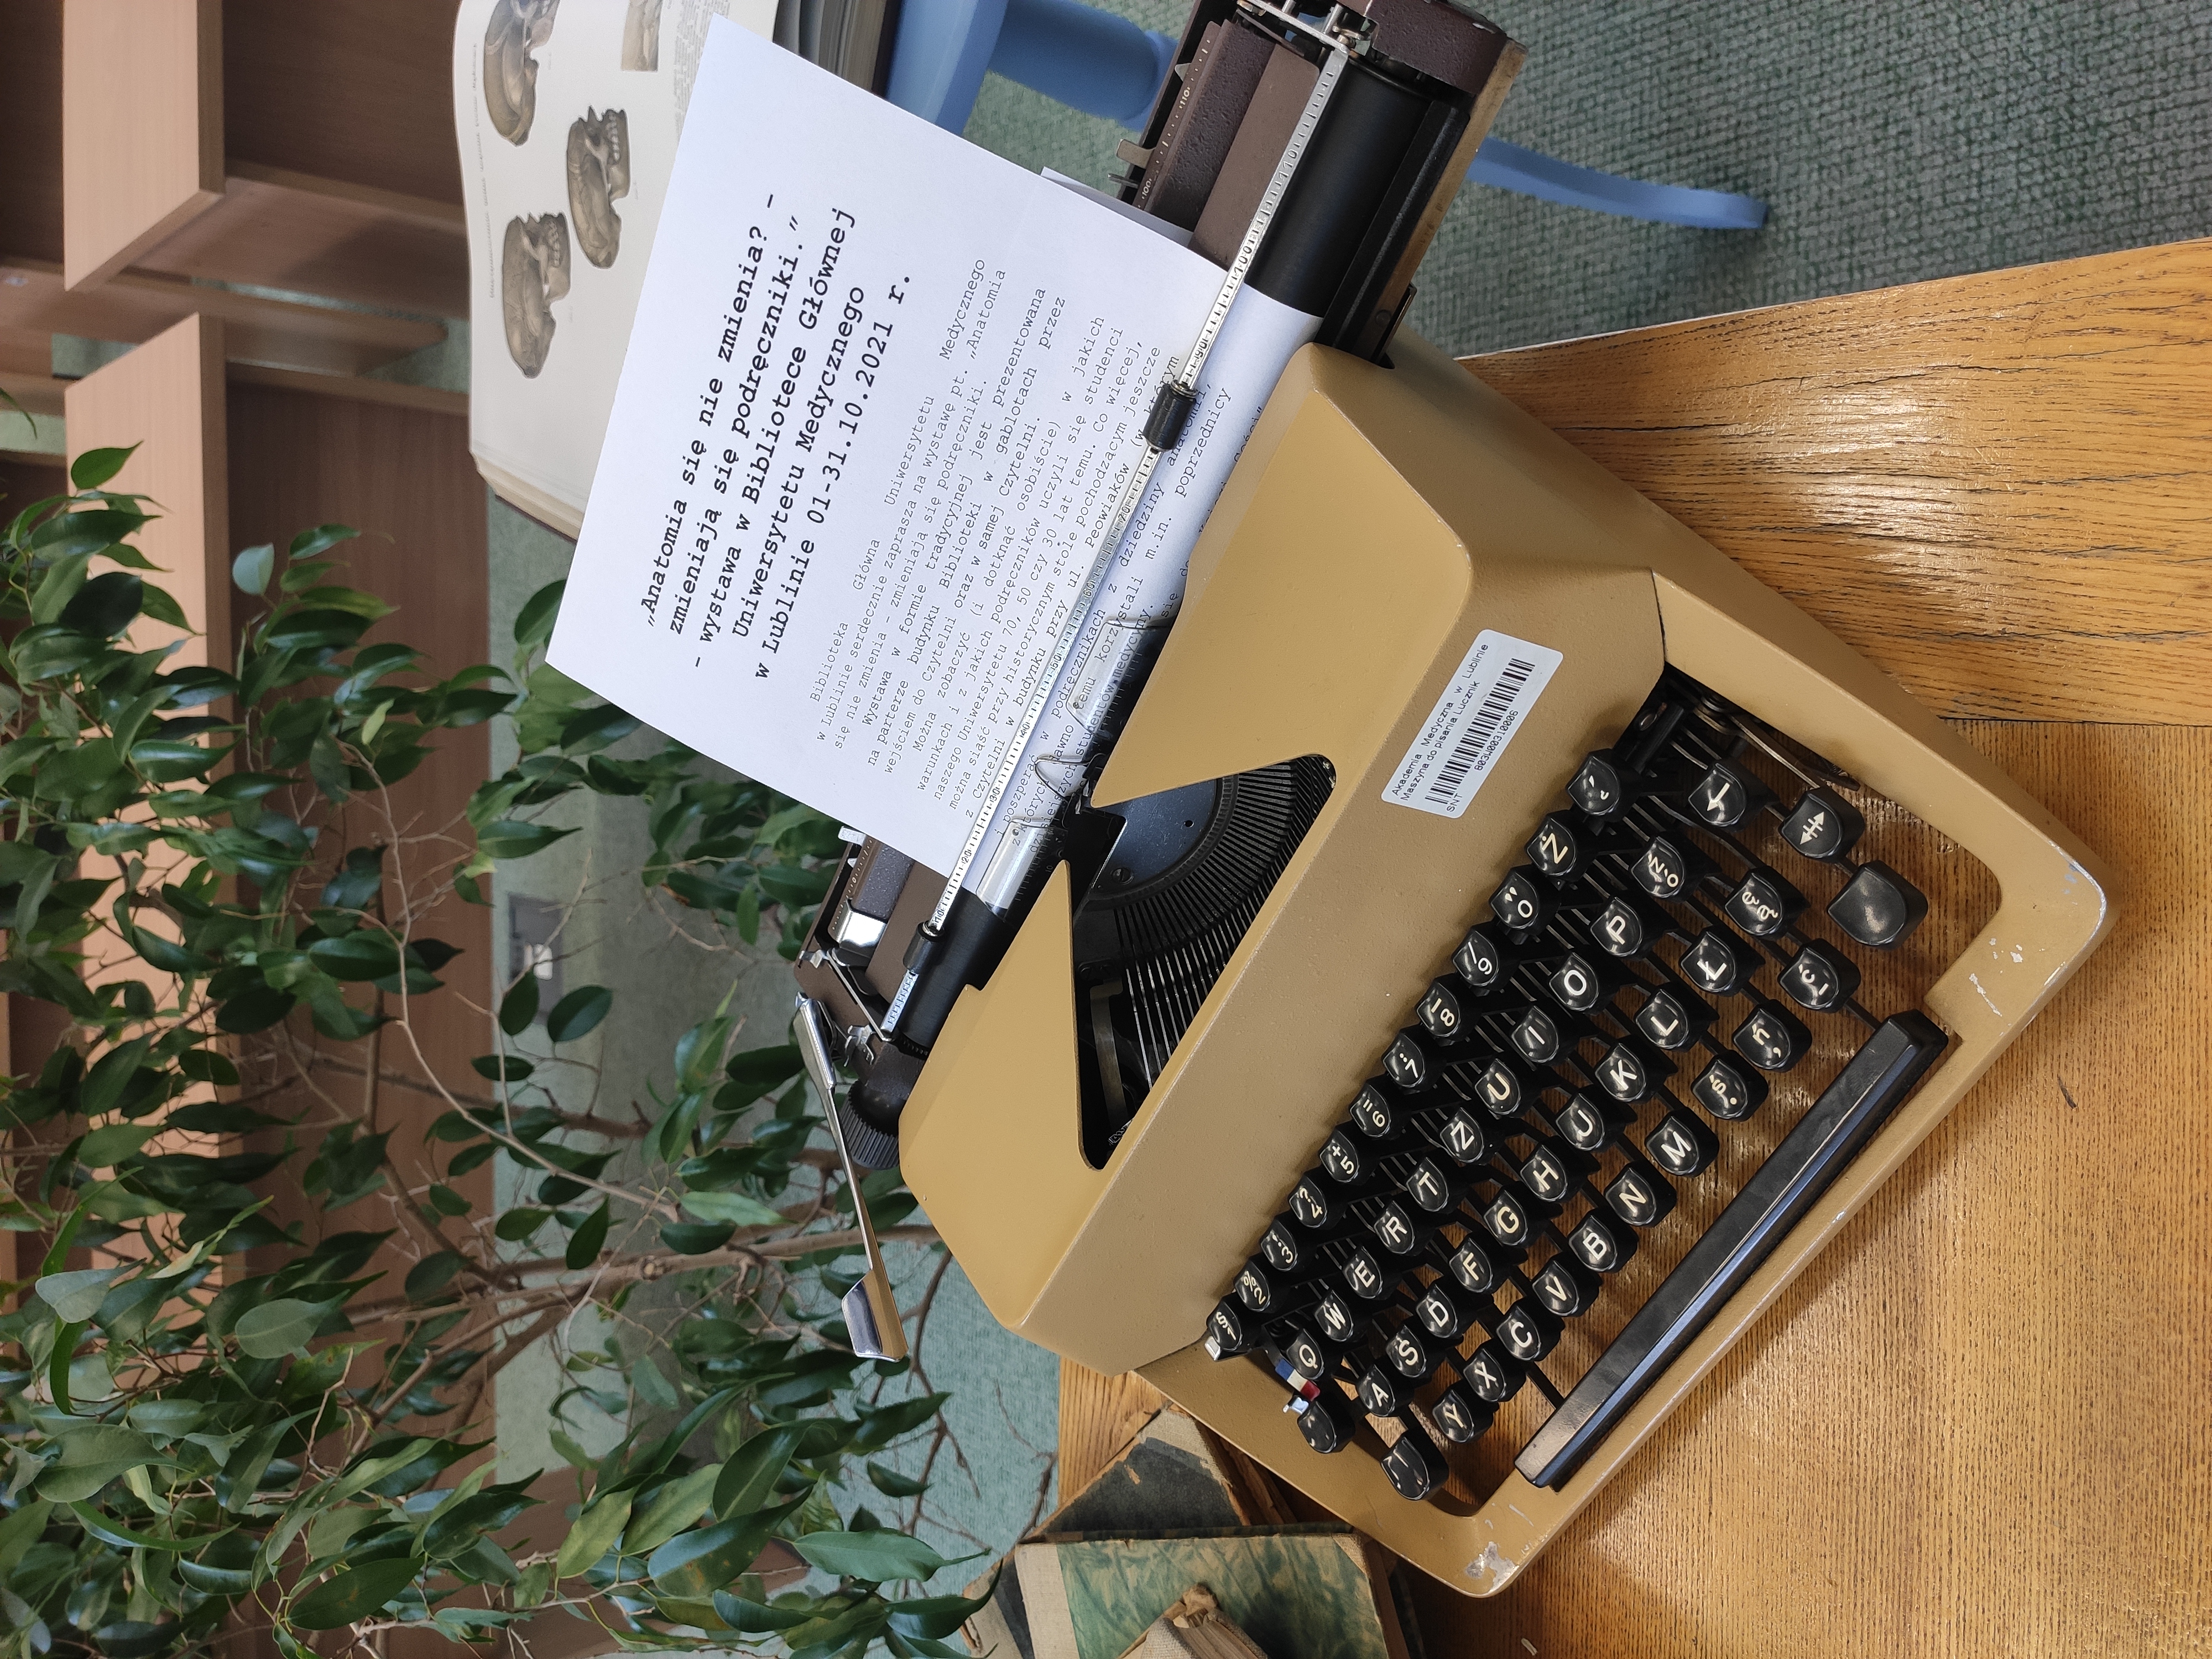 Maszyna do pisania, a w niej kartka z nazwą wystawy